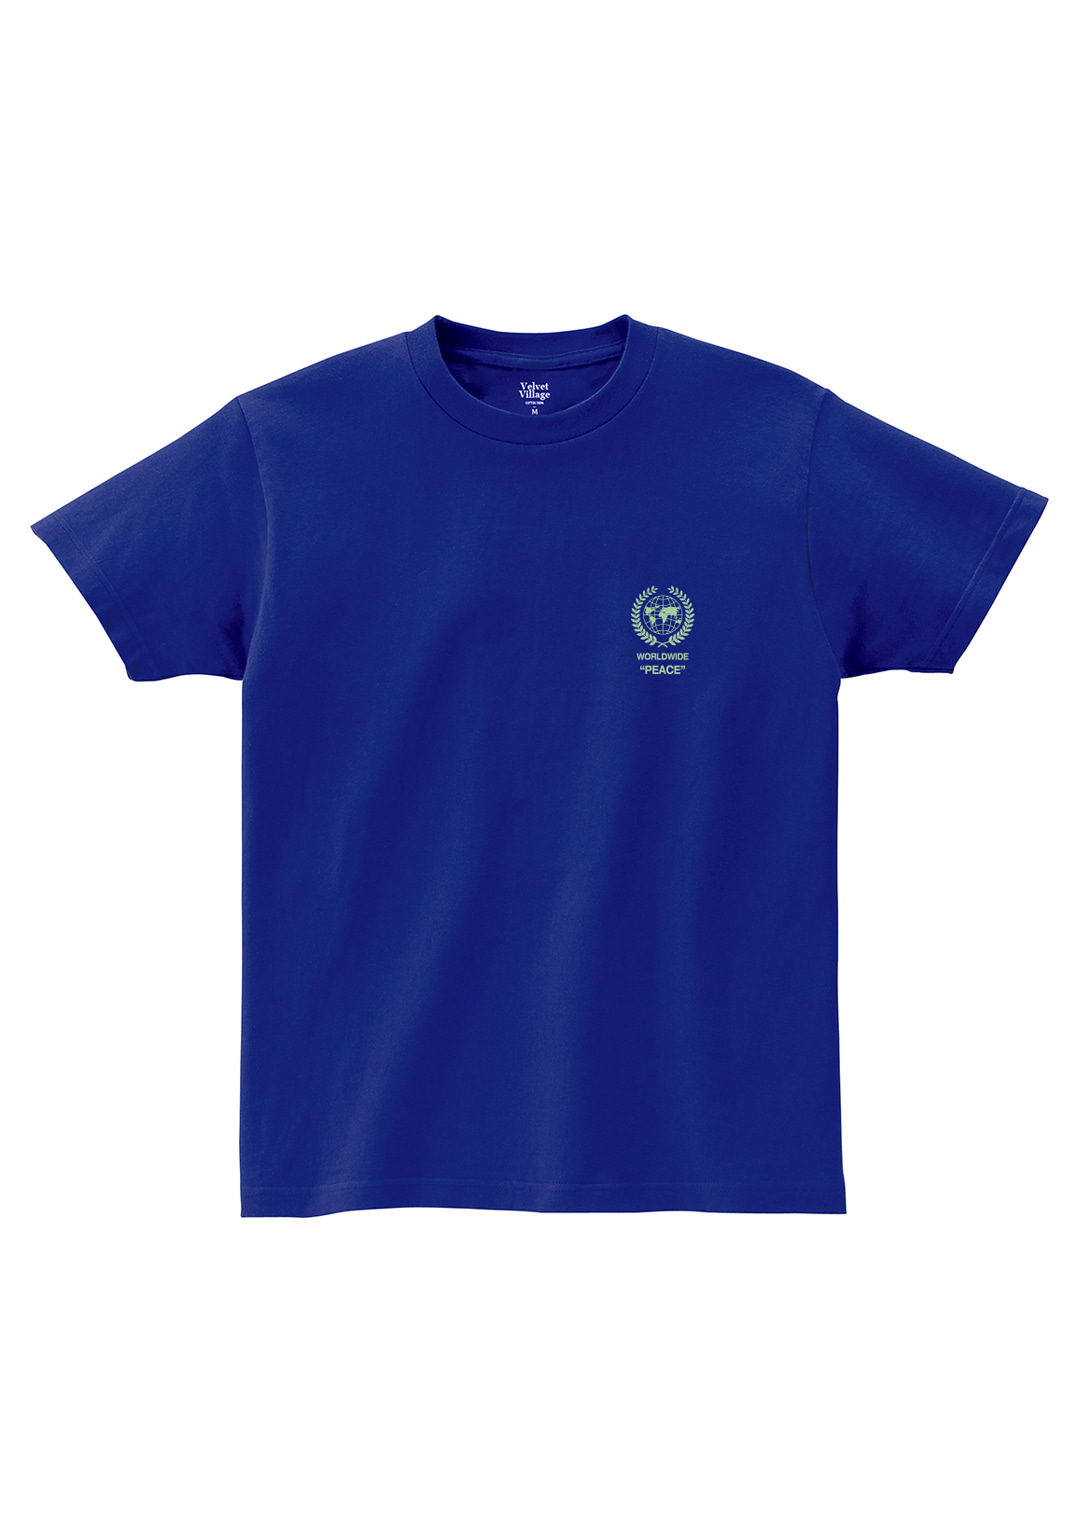 Worldwidepeace T-shirt (Blue)